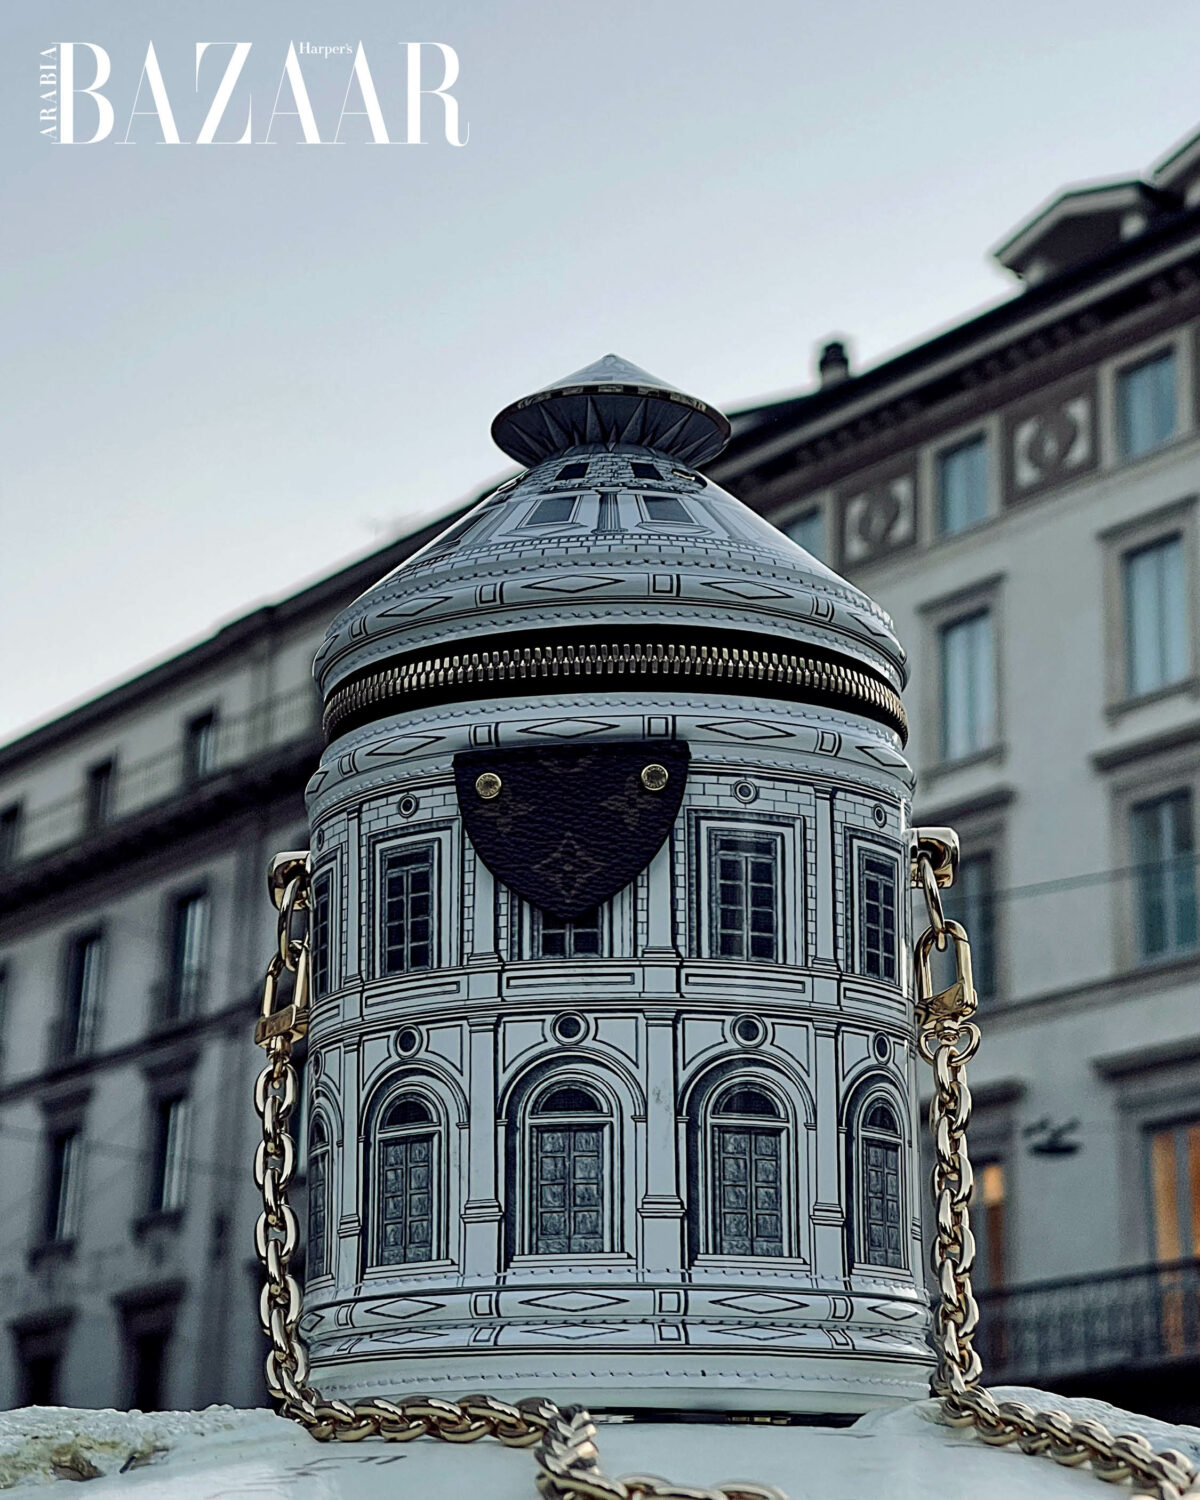 Louis Vuitton x Fornasetti Architettura Collection